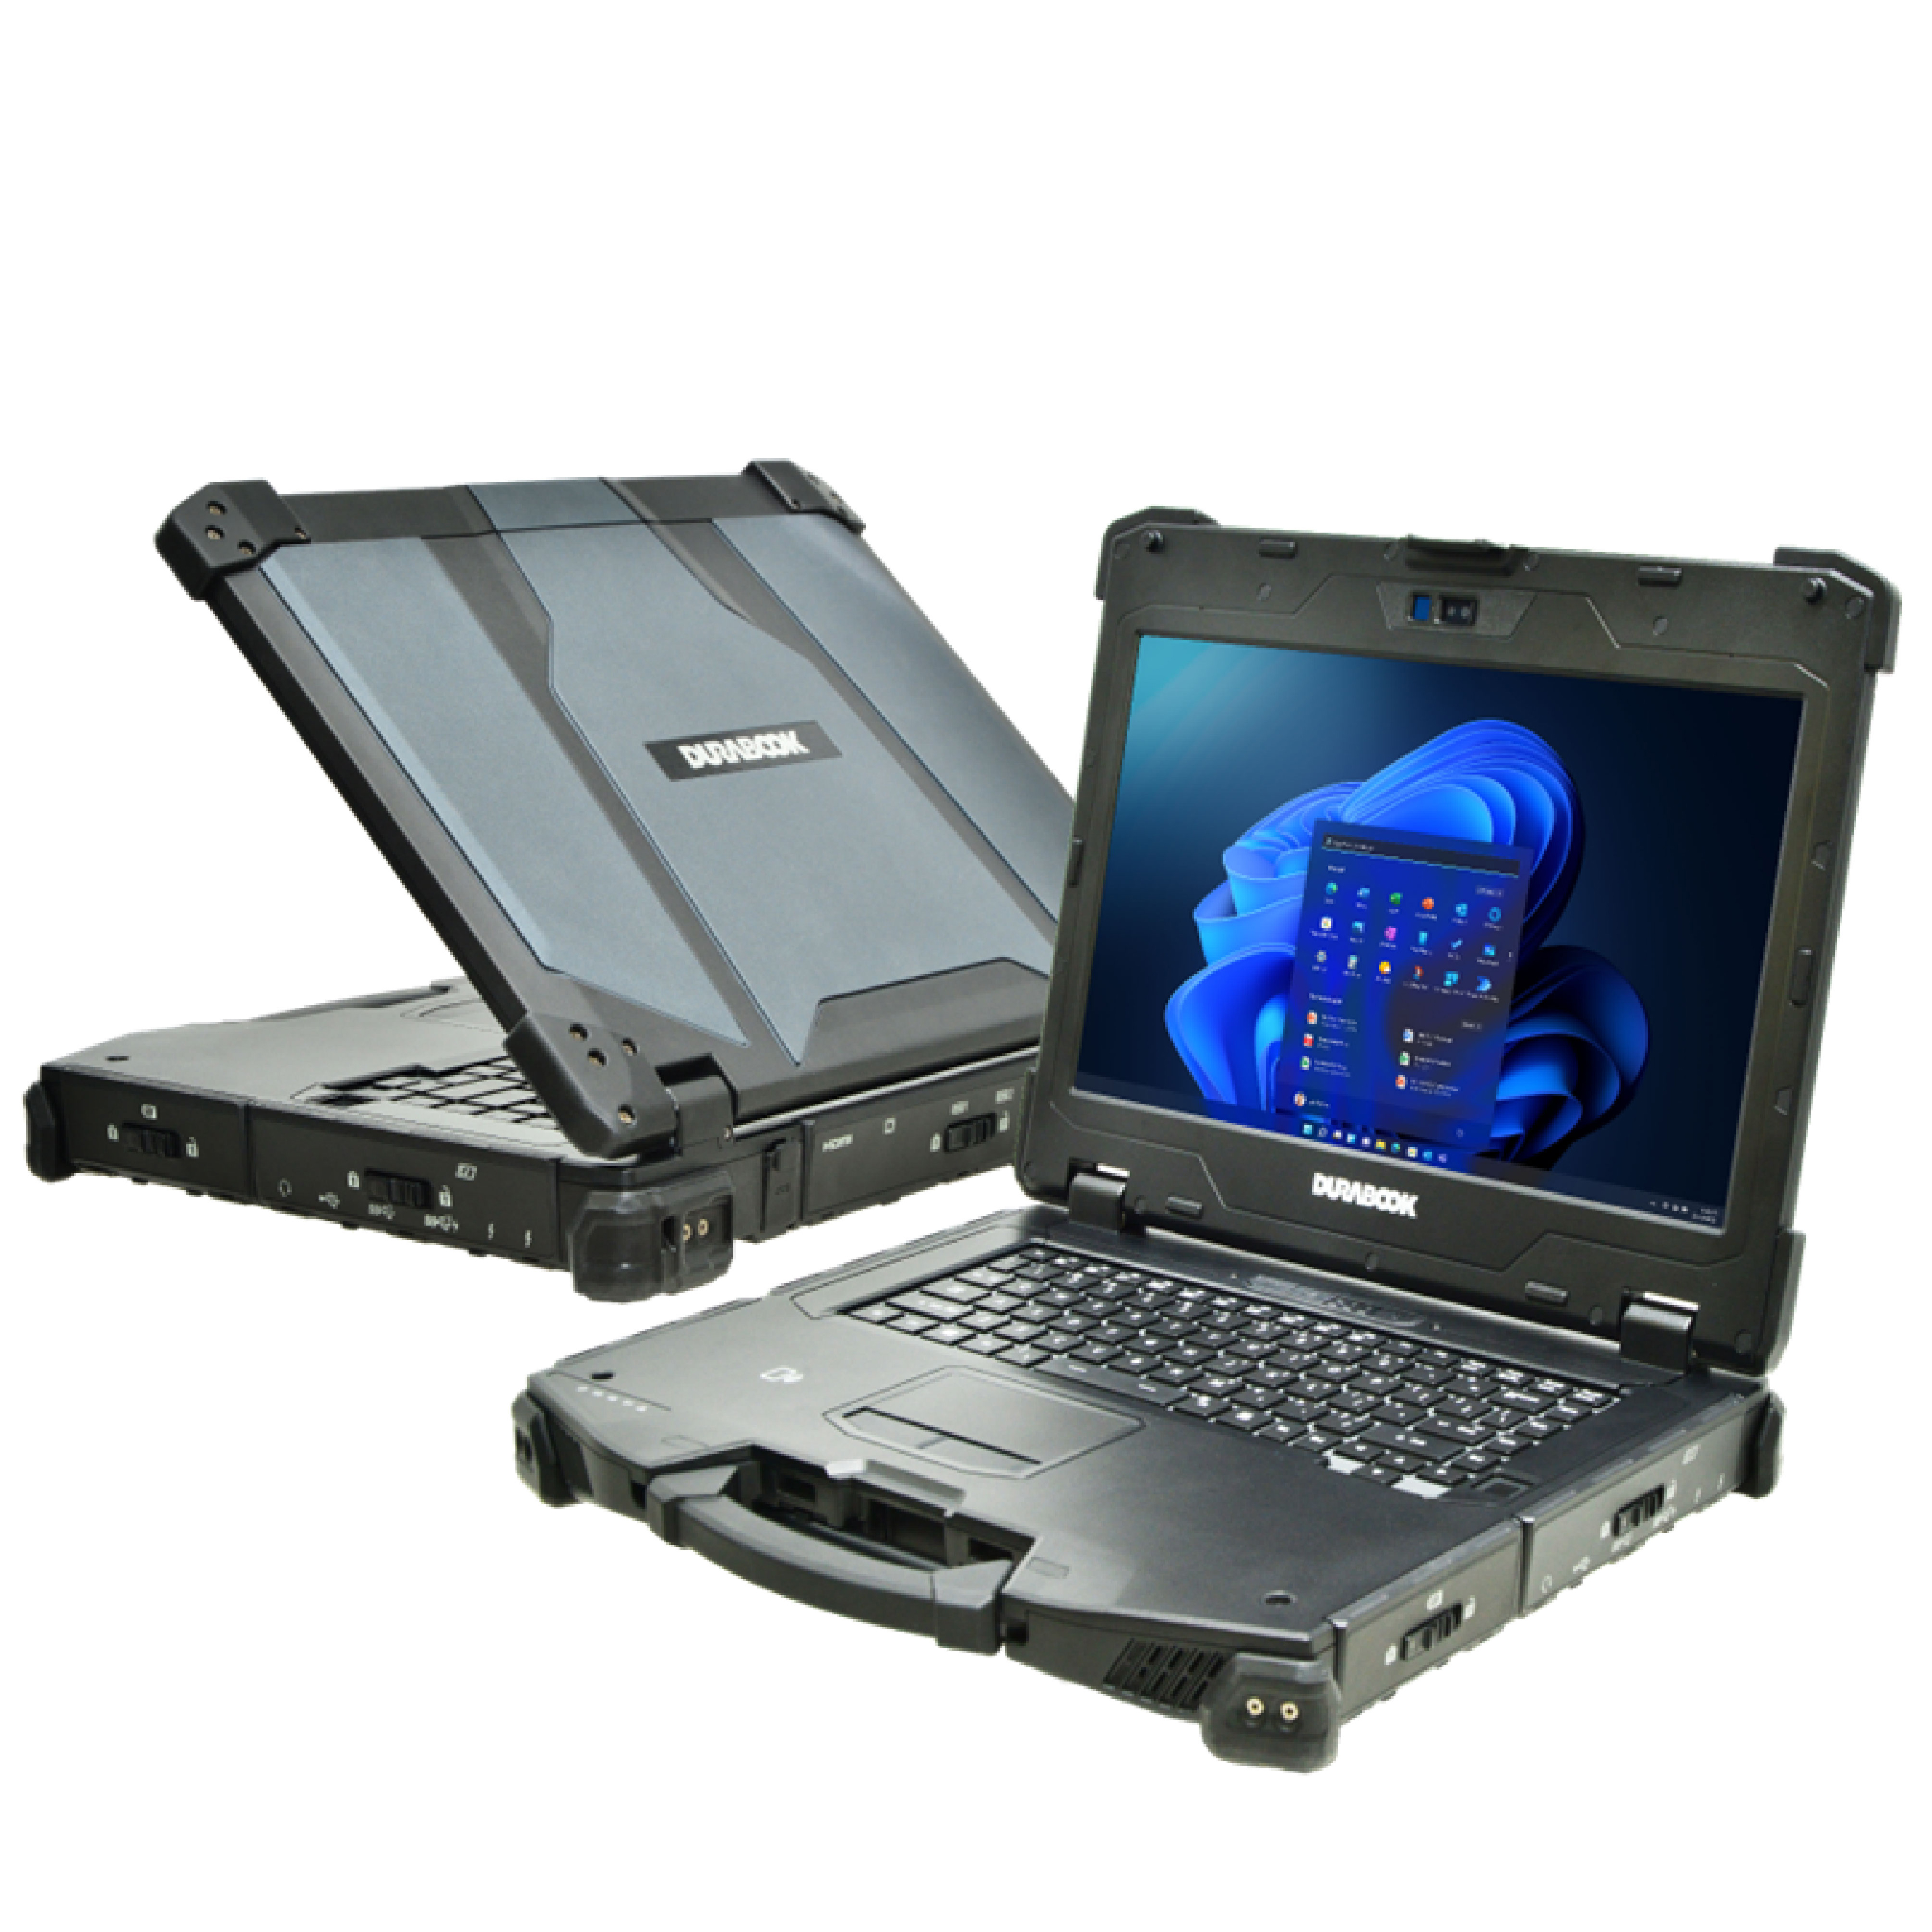 Durabook представляет обновленный полностью защищенный ноутбук Z14I с искусственным интеллектом